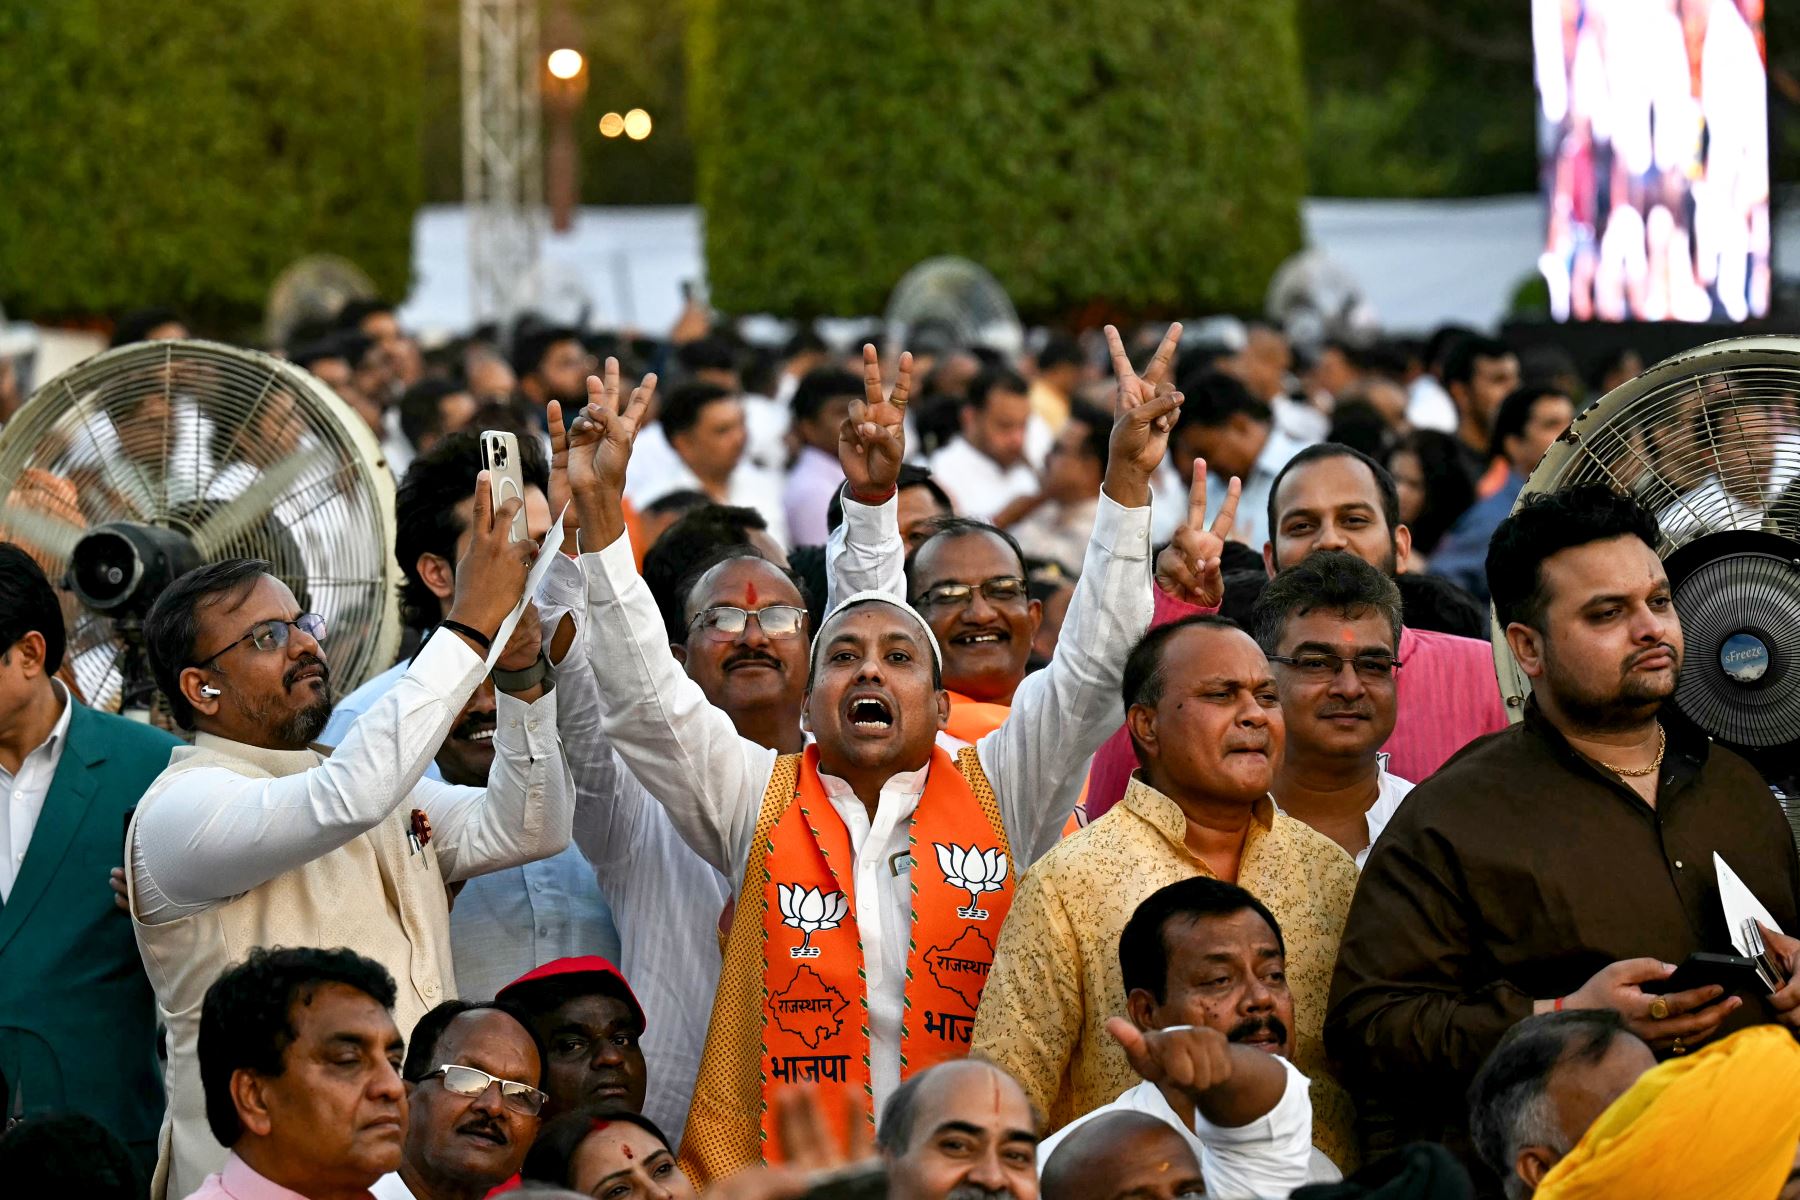 Los partidarios del Partido Bharatiya Janata  aplauden antes del inicio de la ceremonia de juramento del Primer Ministro de la India, Narendra Modi, y del Consejo de Ministros en el palacio presidencial Rashtrapati Bhavan en Nueva Delhi.
Foto: AFP